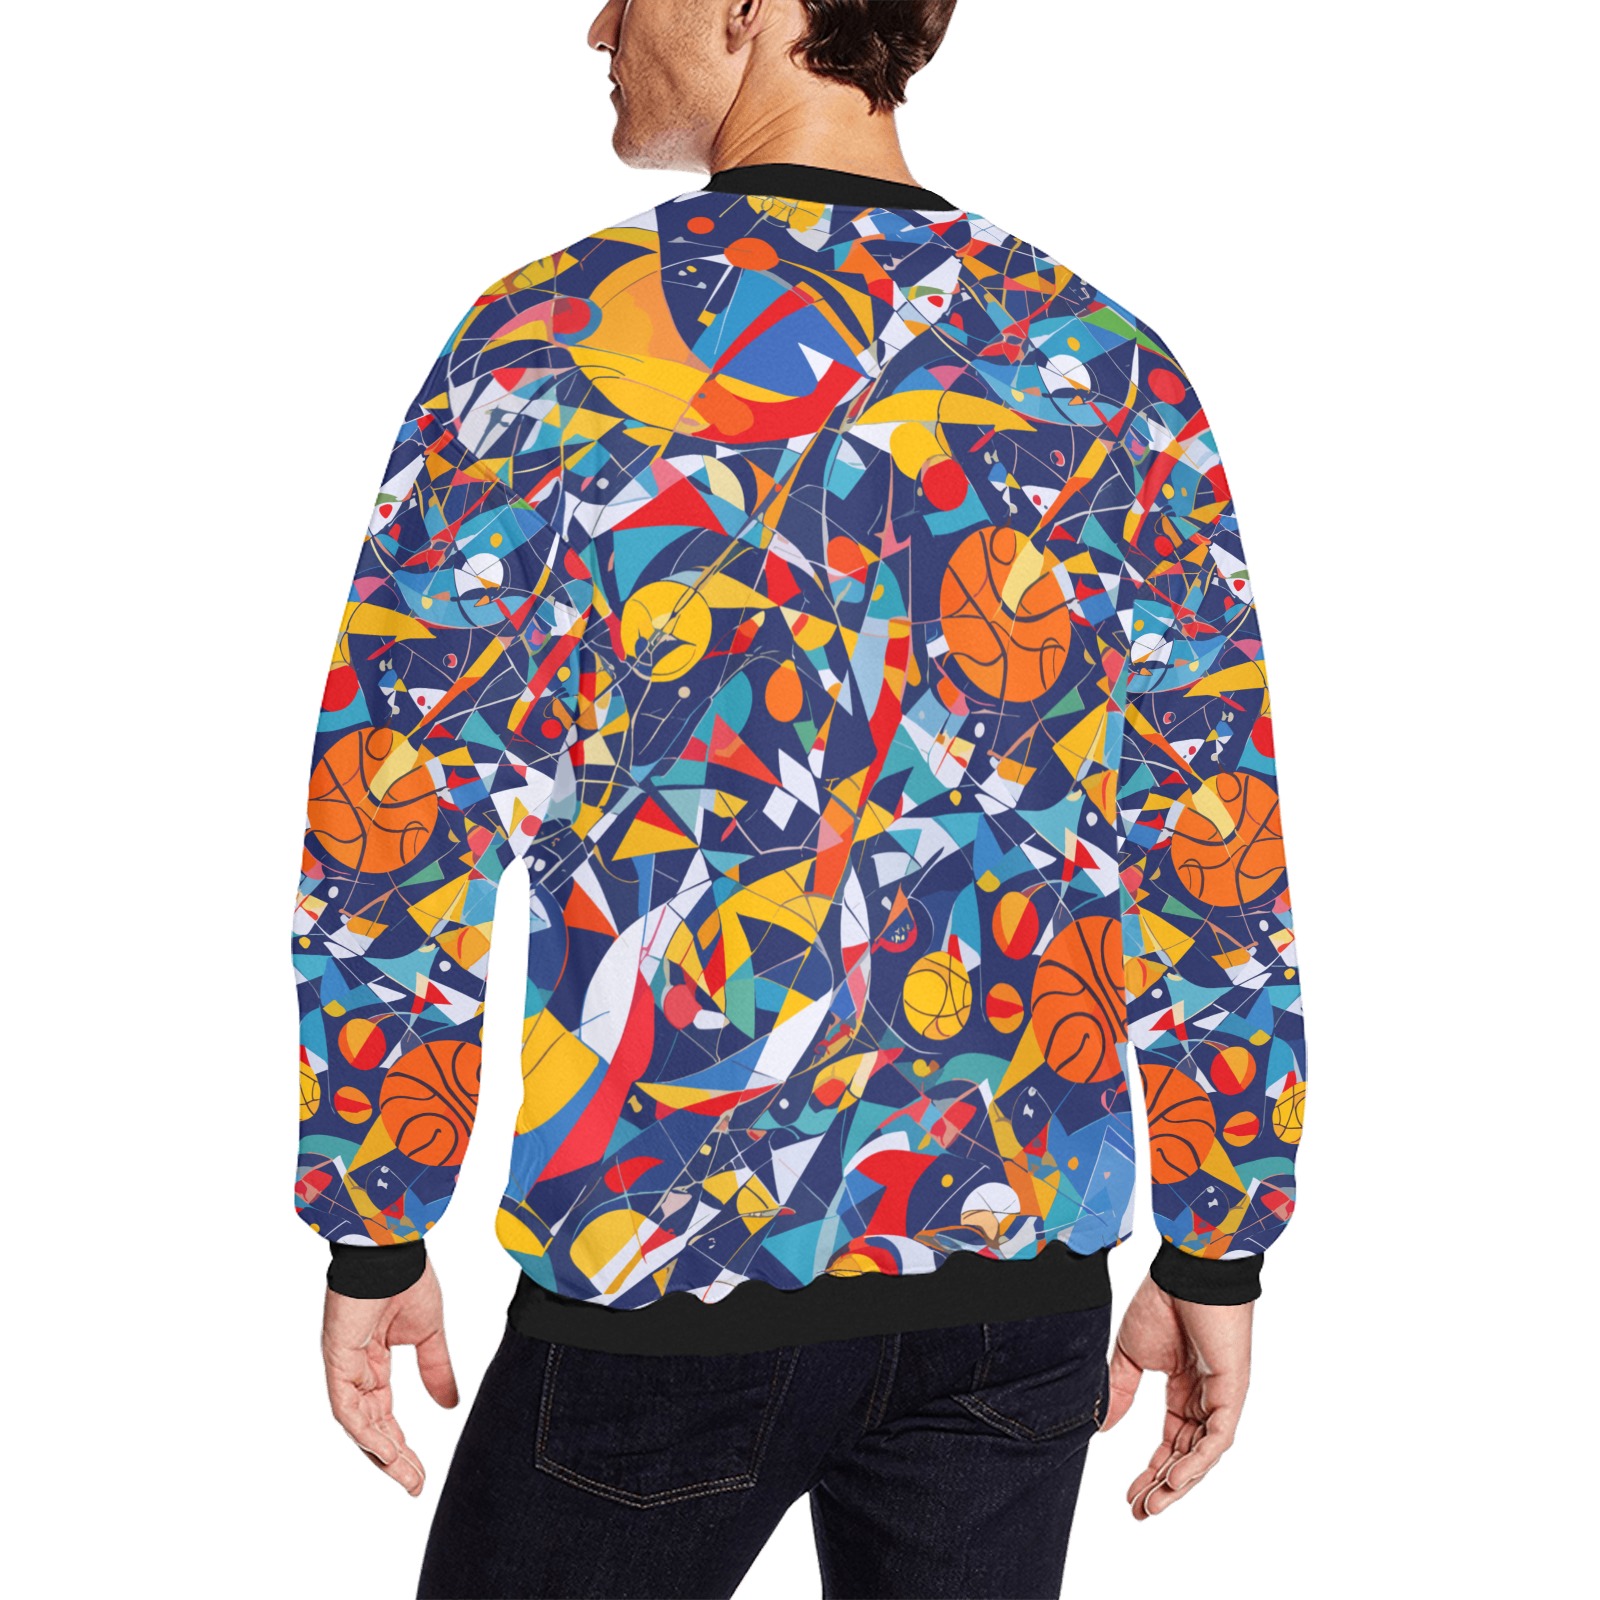 Basketball balls colorful geometric abstract art. Men's Oversized Fleece Crew Sweatshirt (Model H18)